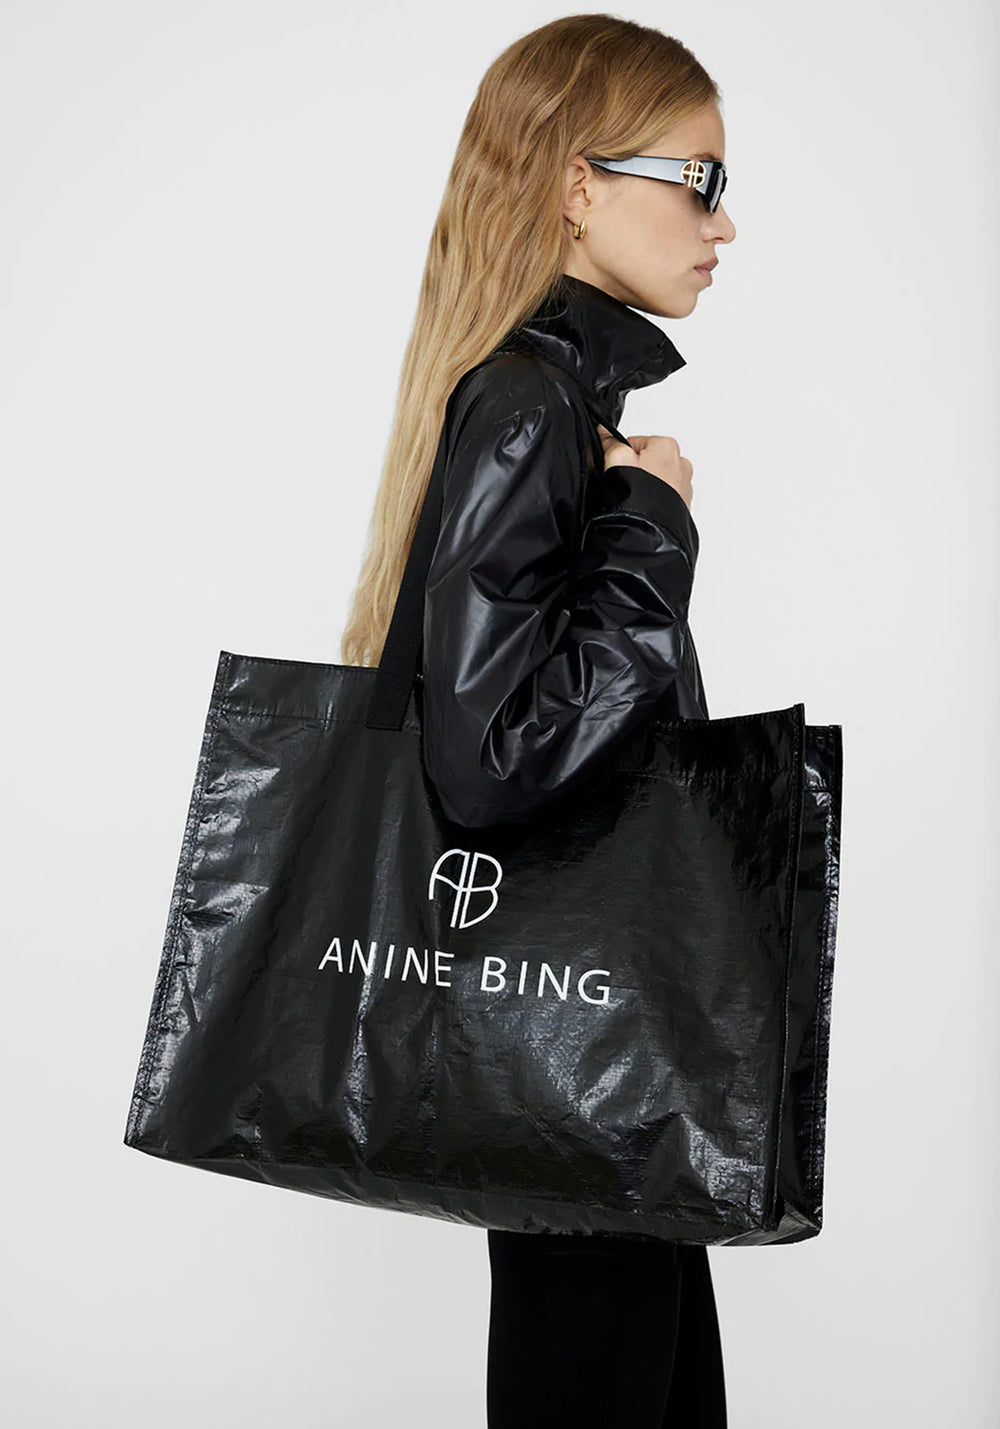 Anine Bing Small Rio Tote Bag Black